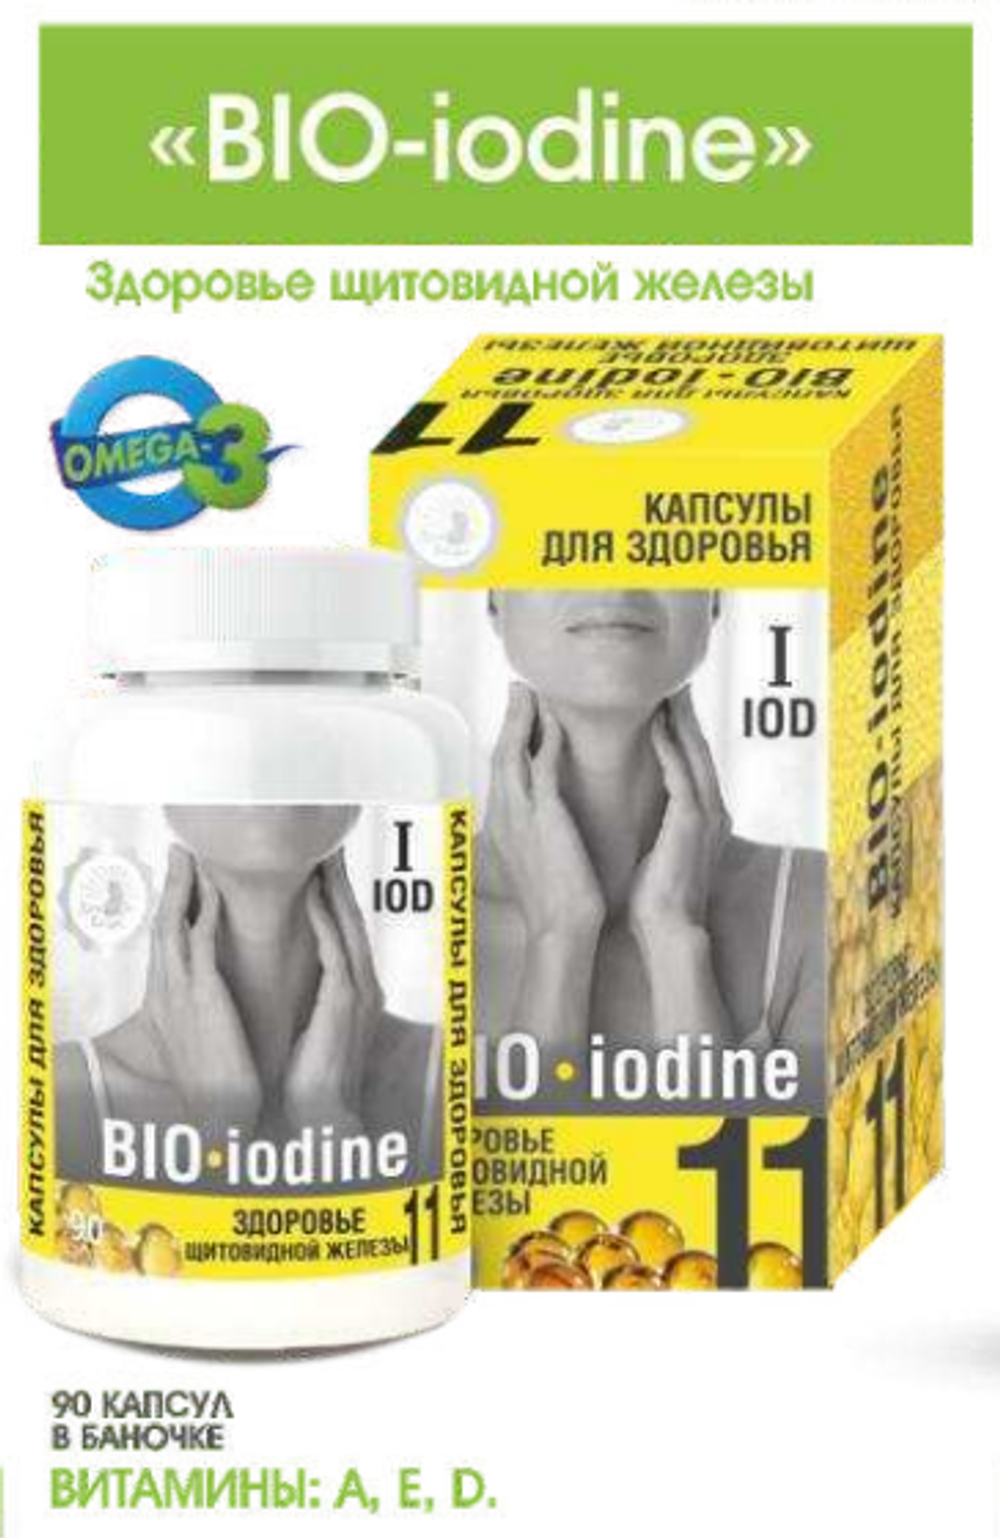 Капсулированные масла с экстрактами BIO-iodine - здоровье щитовидной железы, 90 капс. по 0,3г. Дом Кедра